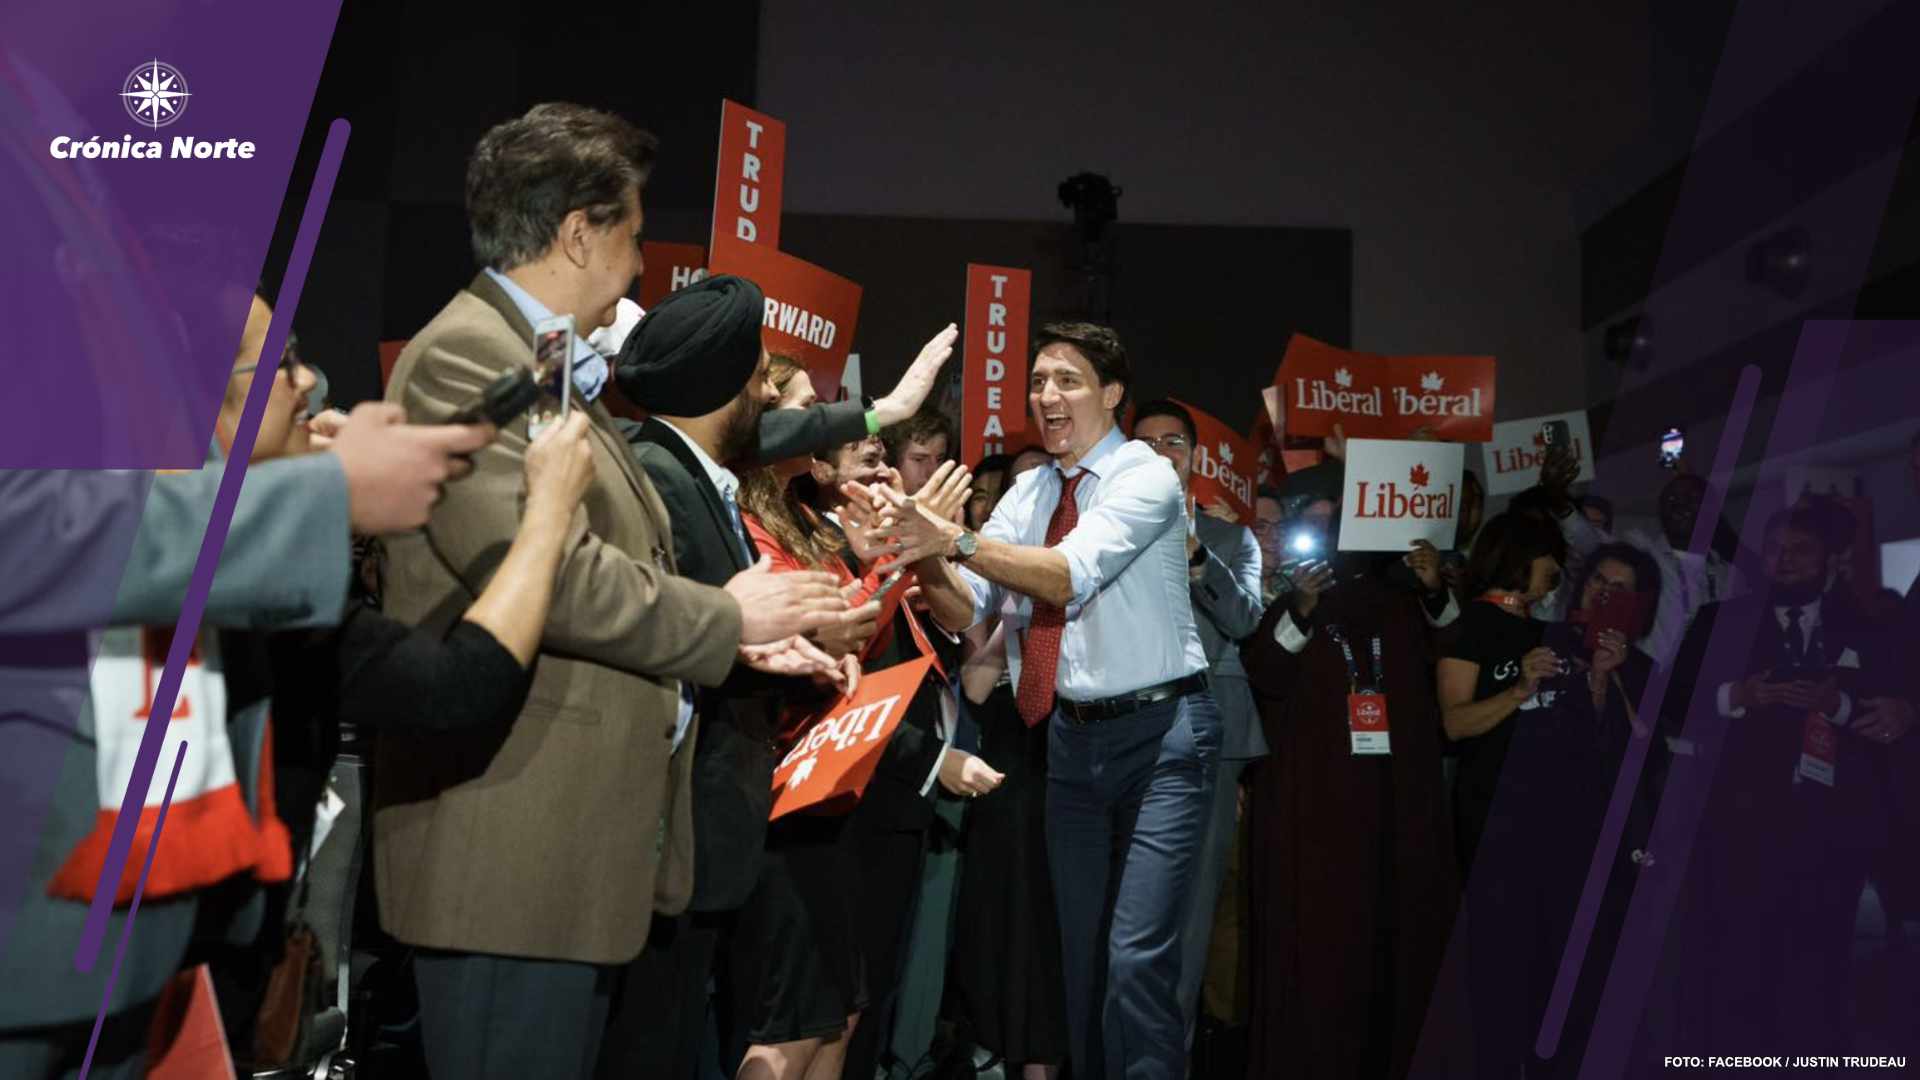 Foto peor momento Trudeau